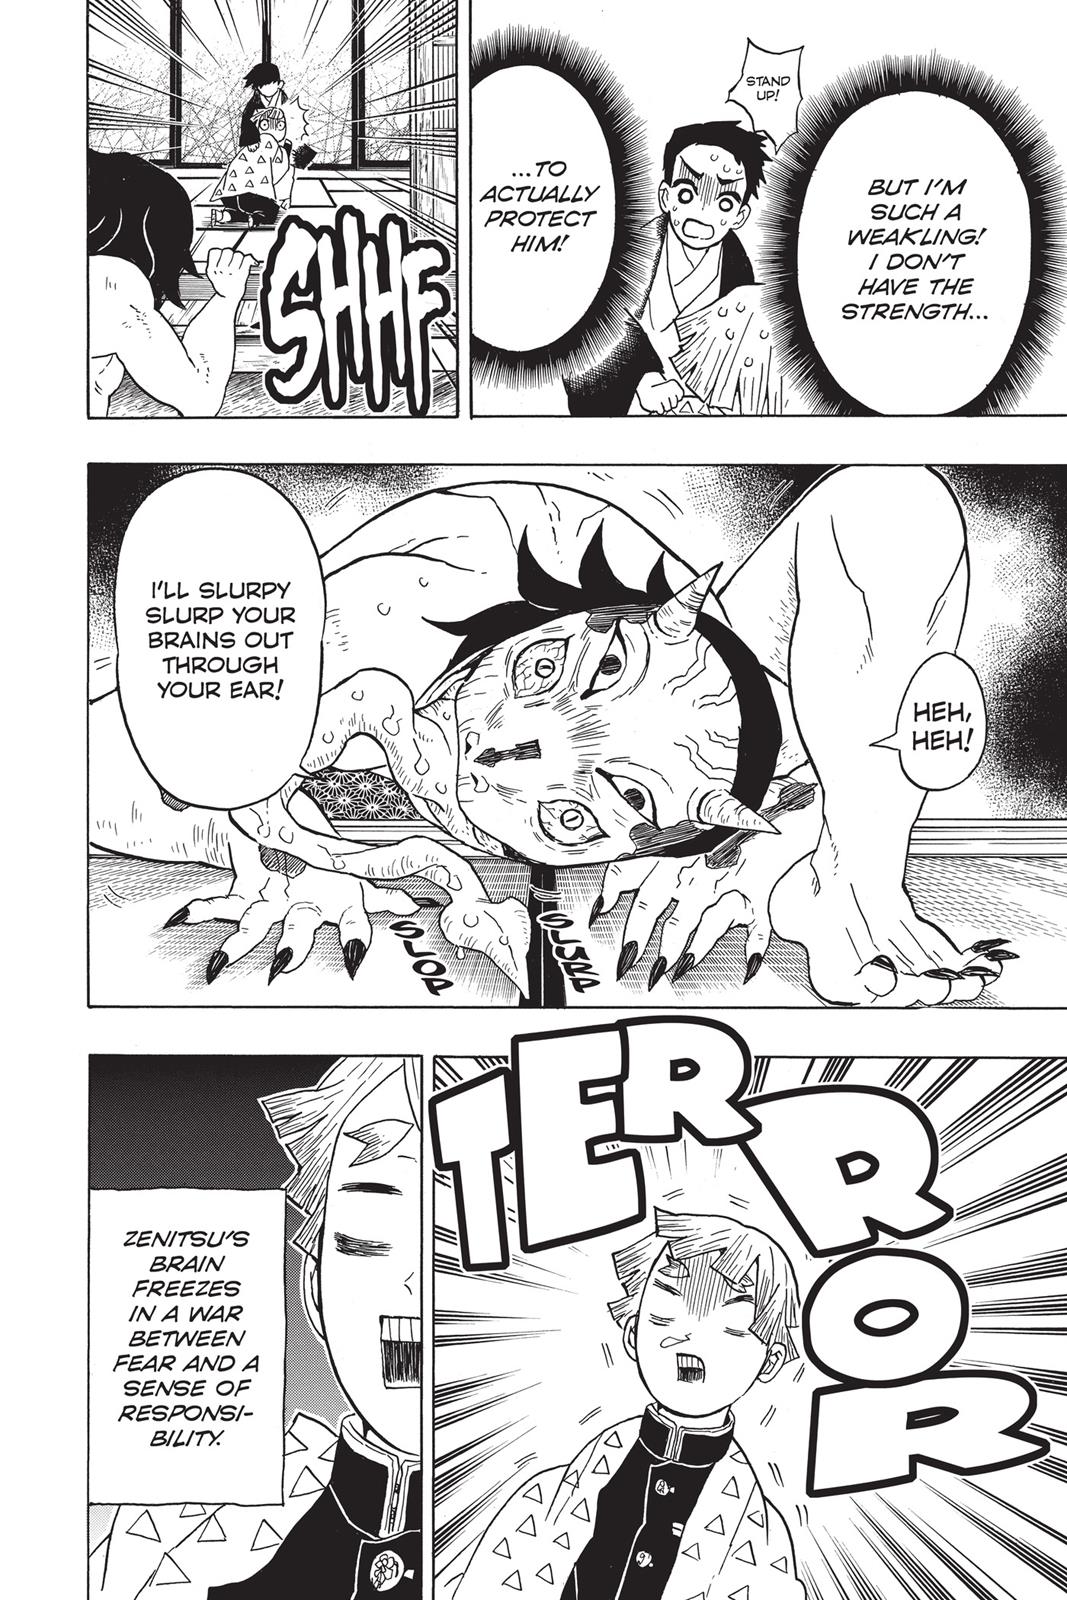 Demon Slayer Manga Manga Chapter - 23 - image 4